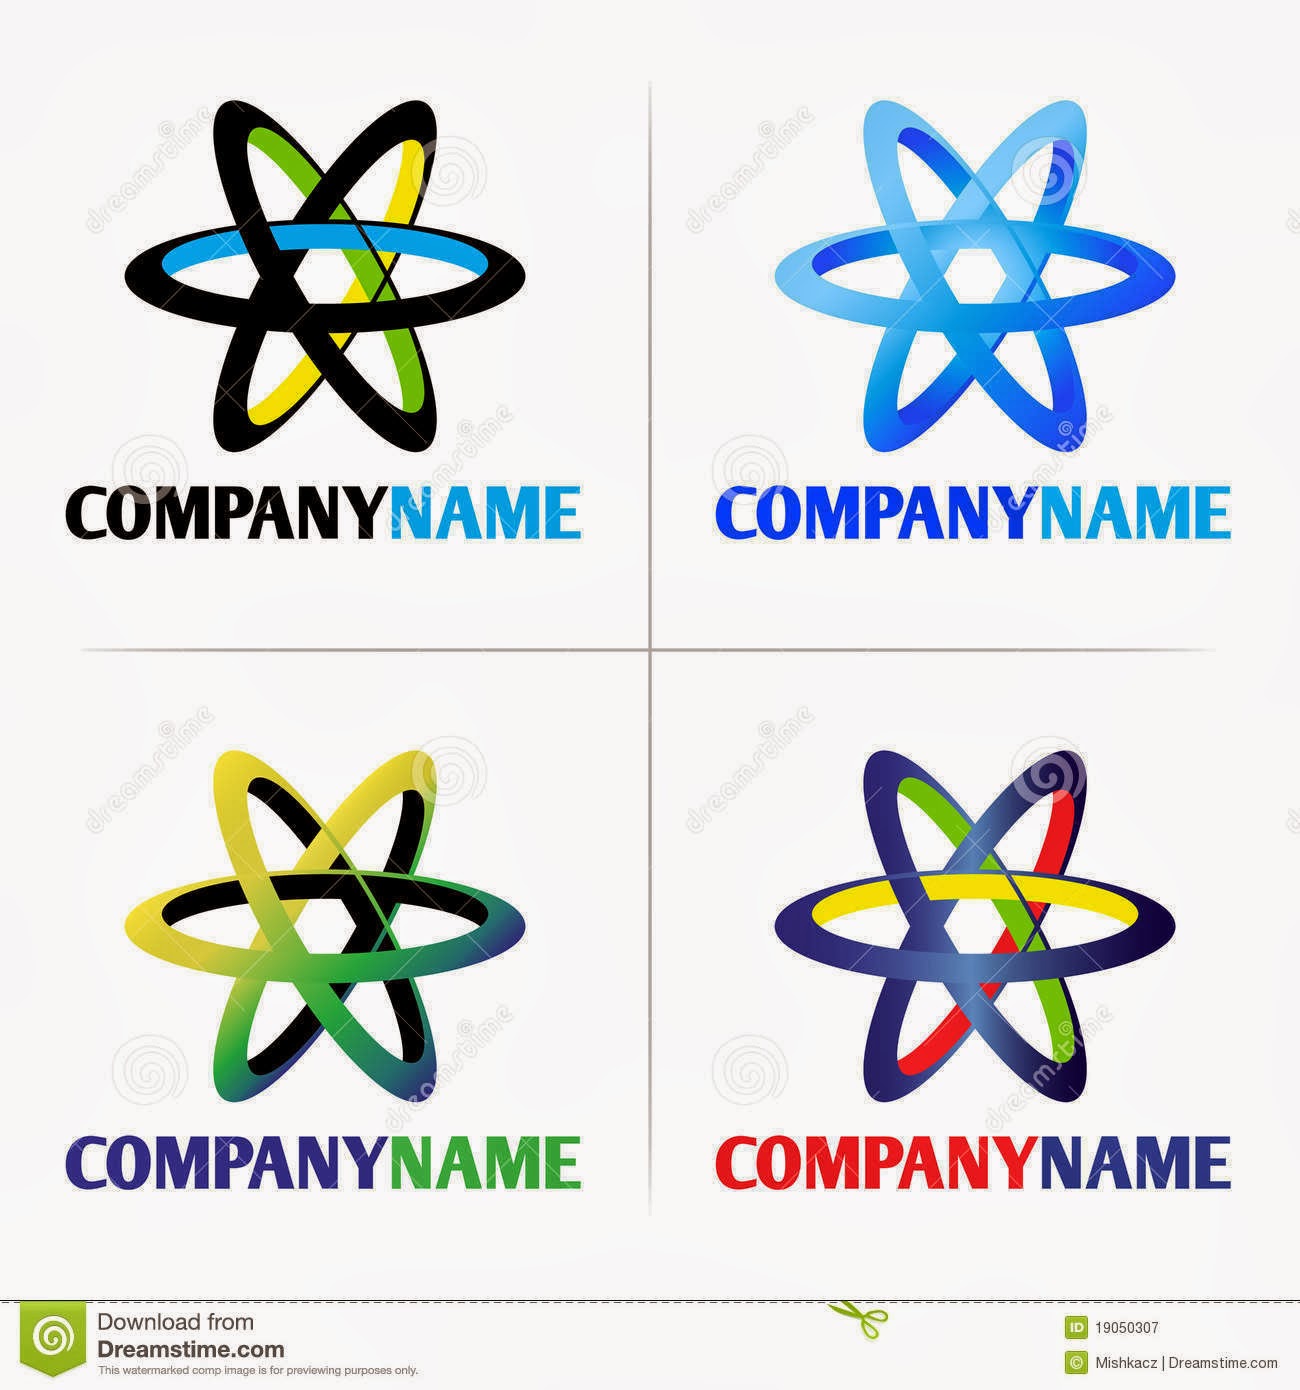 Symbols Companies Logos and Names